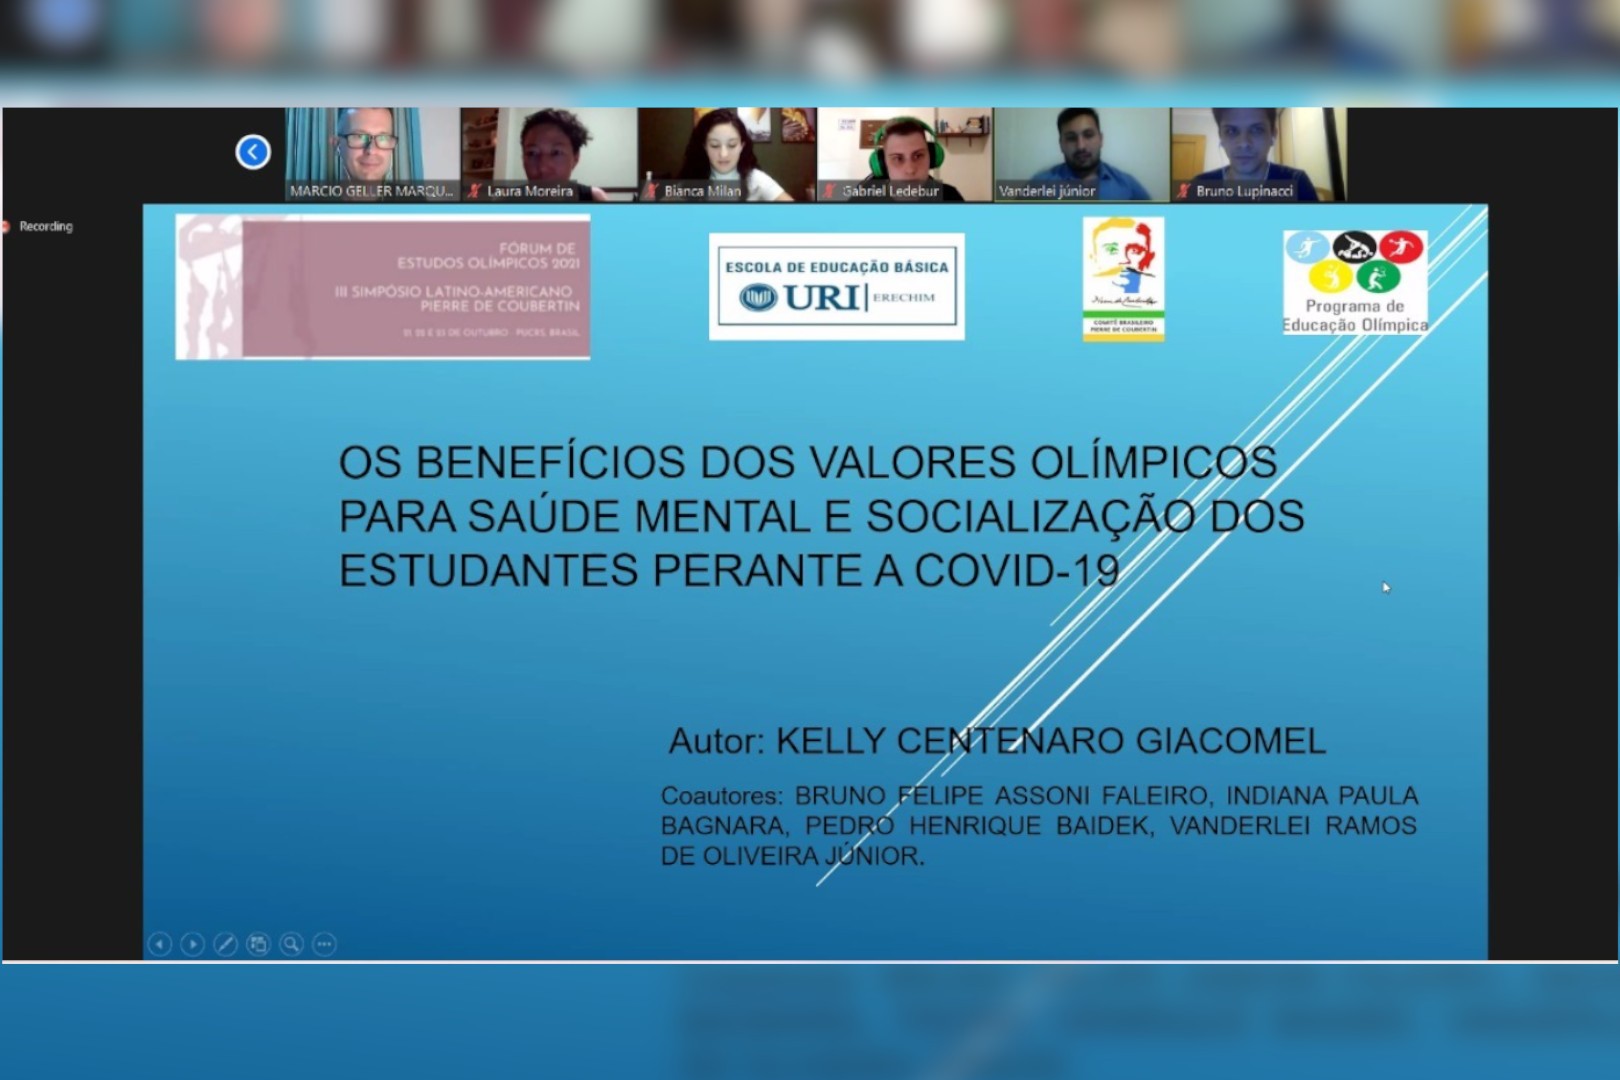 Professor Vanderlei Ramos de Oliveira apresentou o trabalho de Kelly Centenaro Giacomel sobre os benefcios dos Valores Olmpicos para sade mental